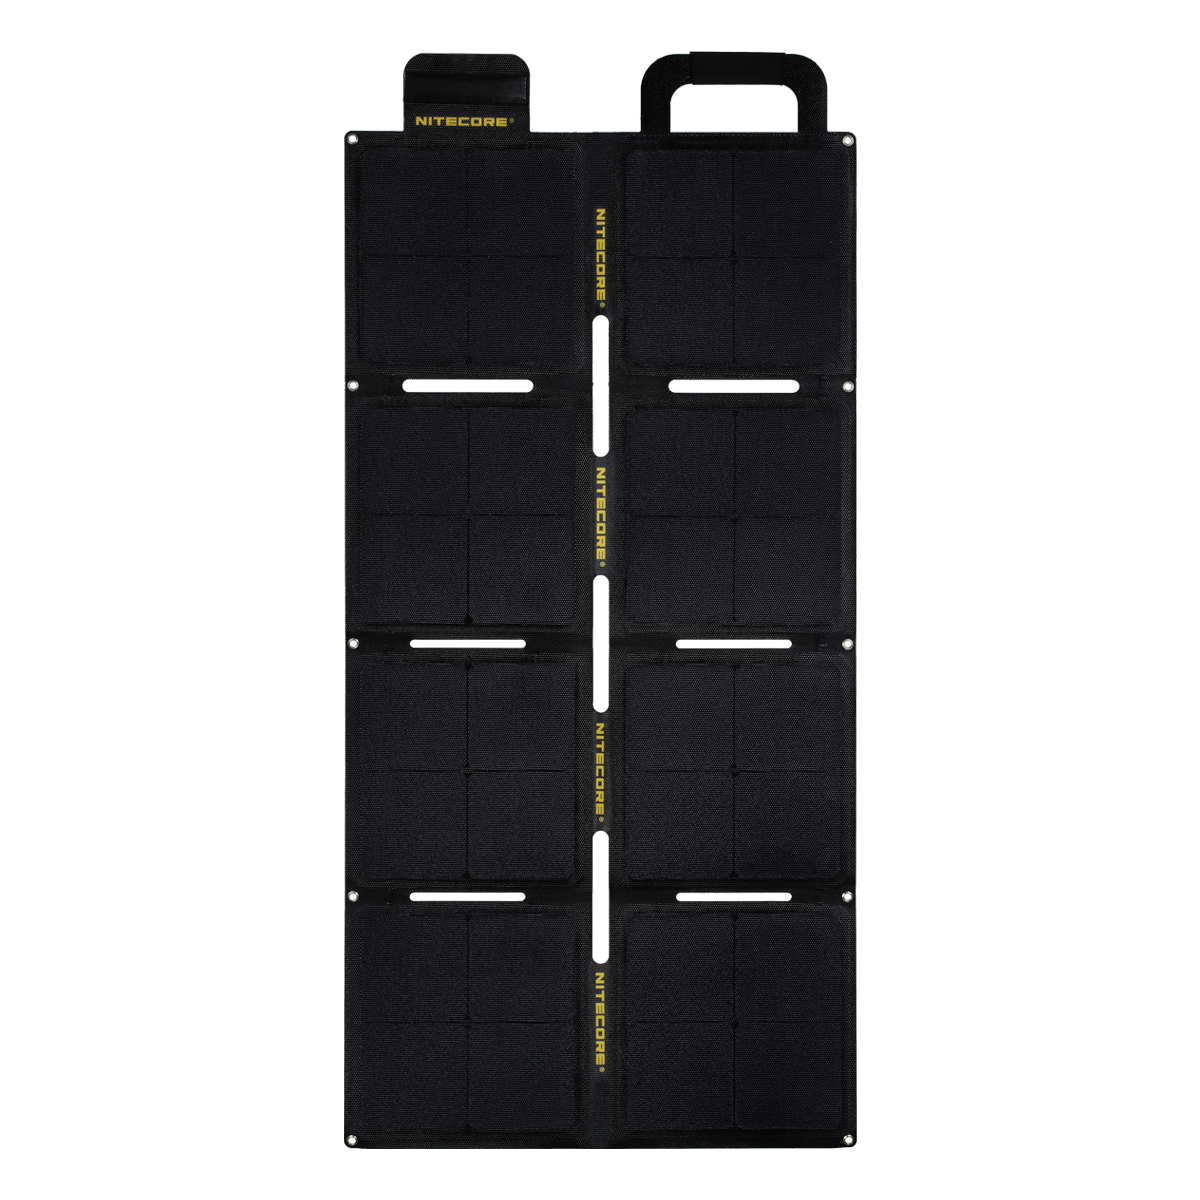 ainel solar dobrável NITECORE FSP100W ETFE de 100 W com impermeabilidade IPX5, saída de 5,6 A e 18 V para dispositivos de células solares de energia solar em acampamentos e viagens.